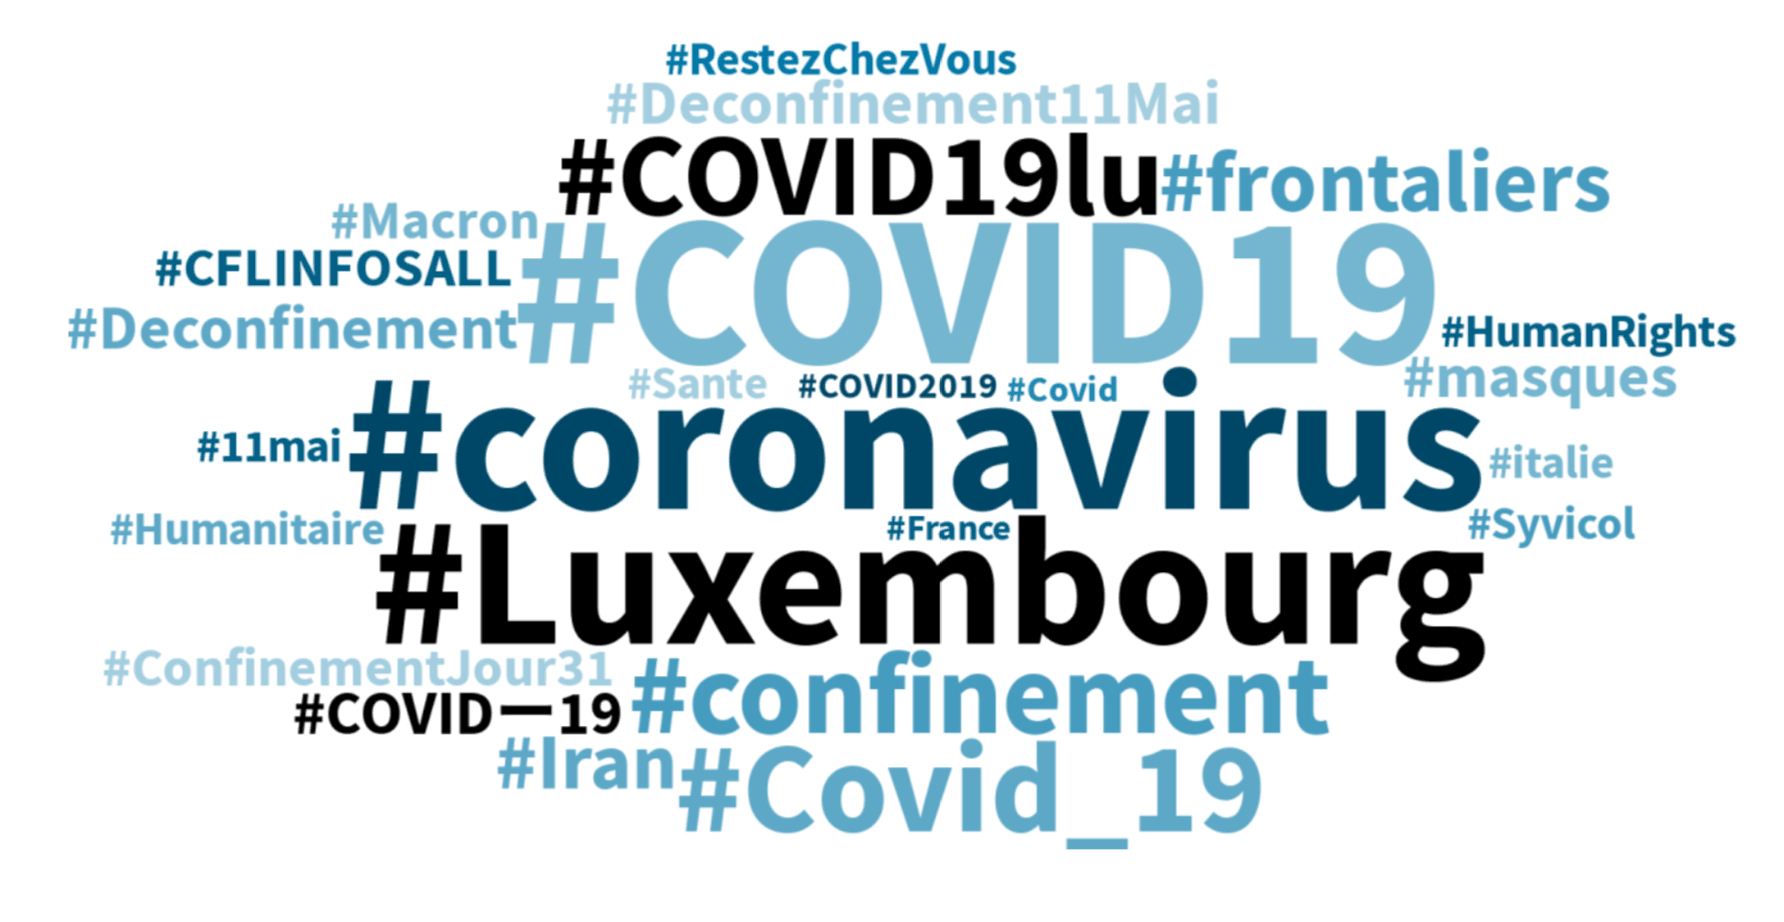 Les hashtags en français en vogue au Luxembourg durant les 24 dernières heures. (Photo: Capture d’écran/Talkwalker)